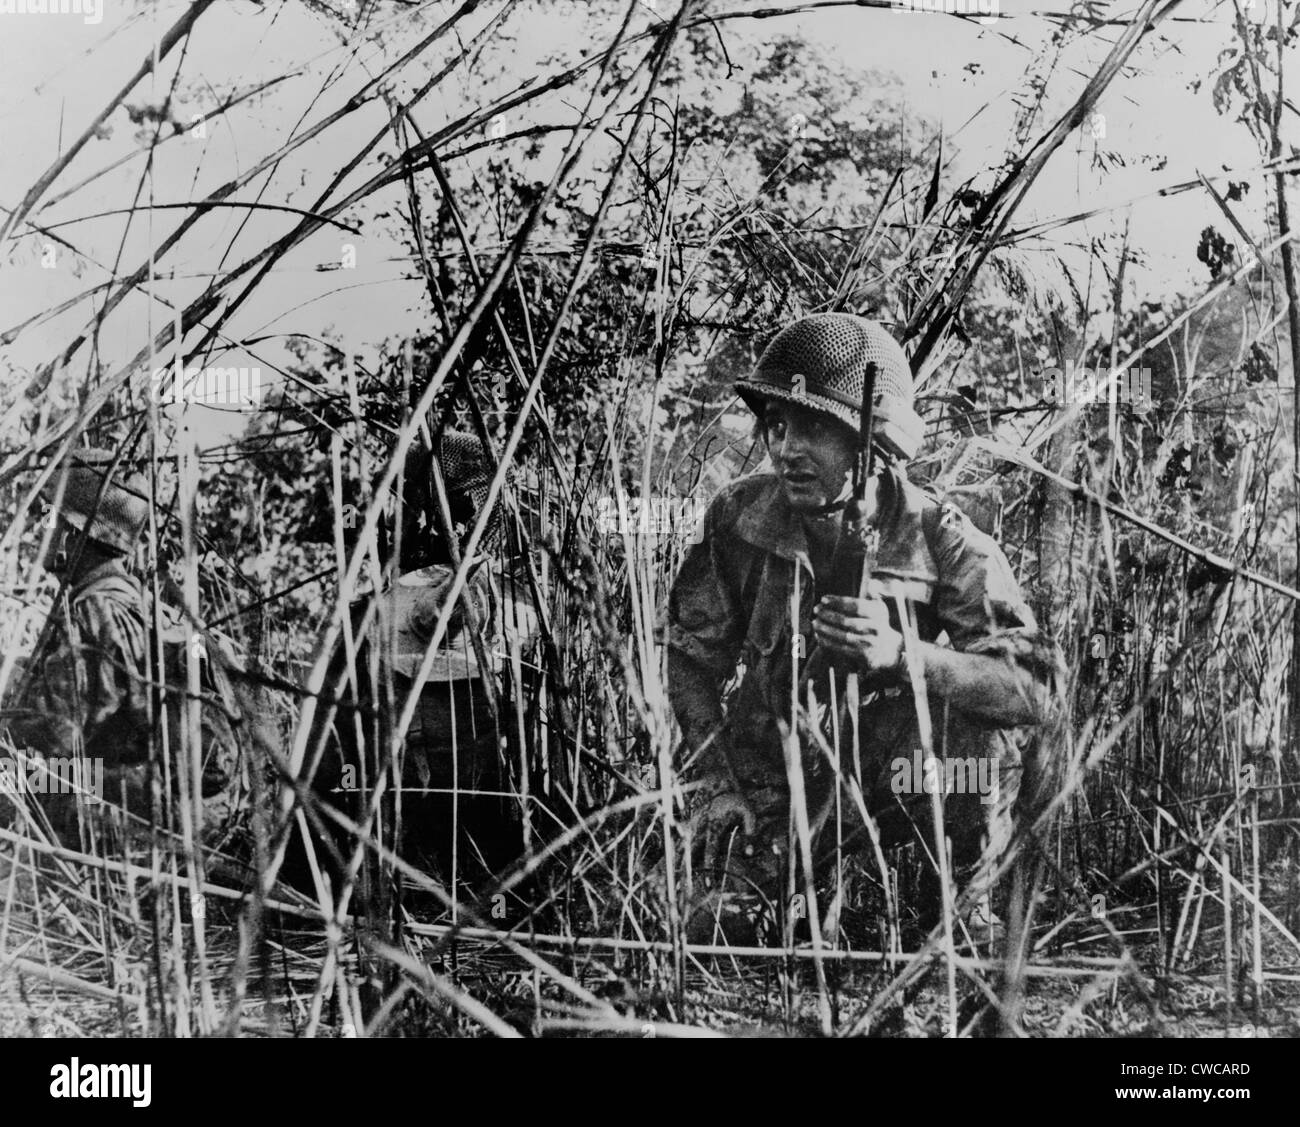 Französische ausländischen Legionäre in Vietnam. Französische Soldaten auf Patrouille kauerte im Dickicht außerhalb von Dien Bien Phu, Vietnam. 1954. Stockfoto